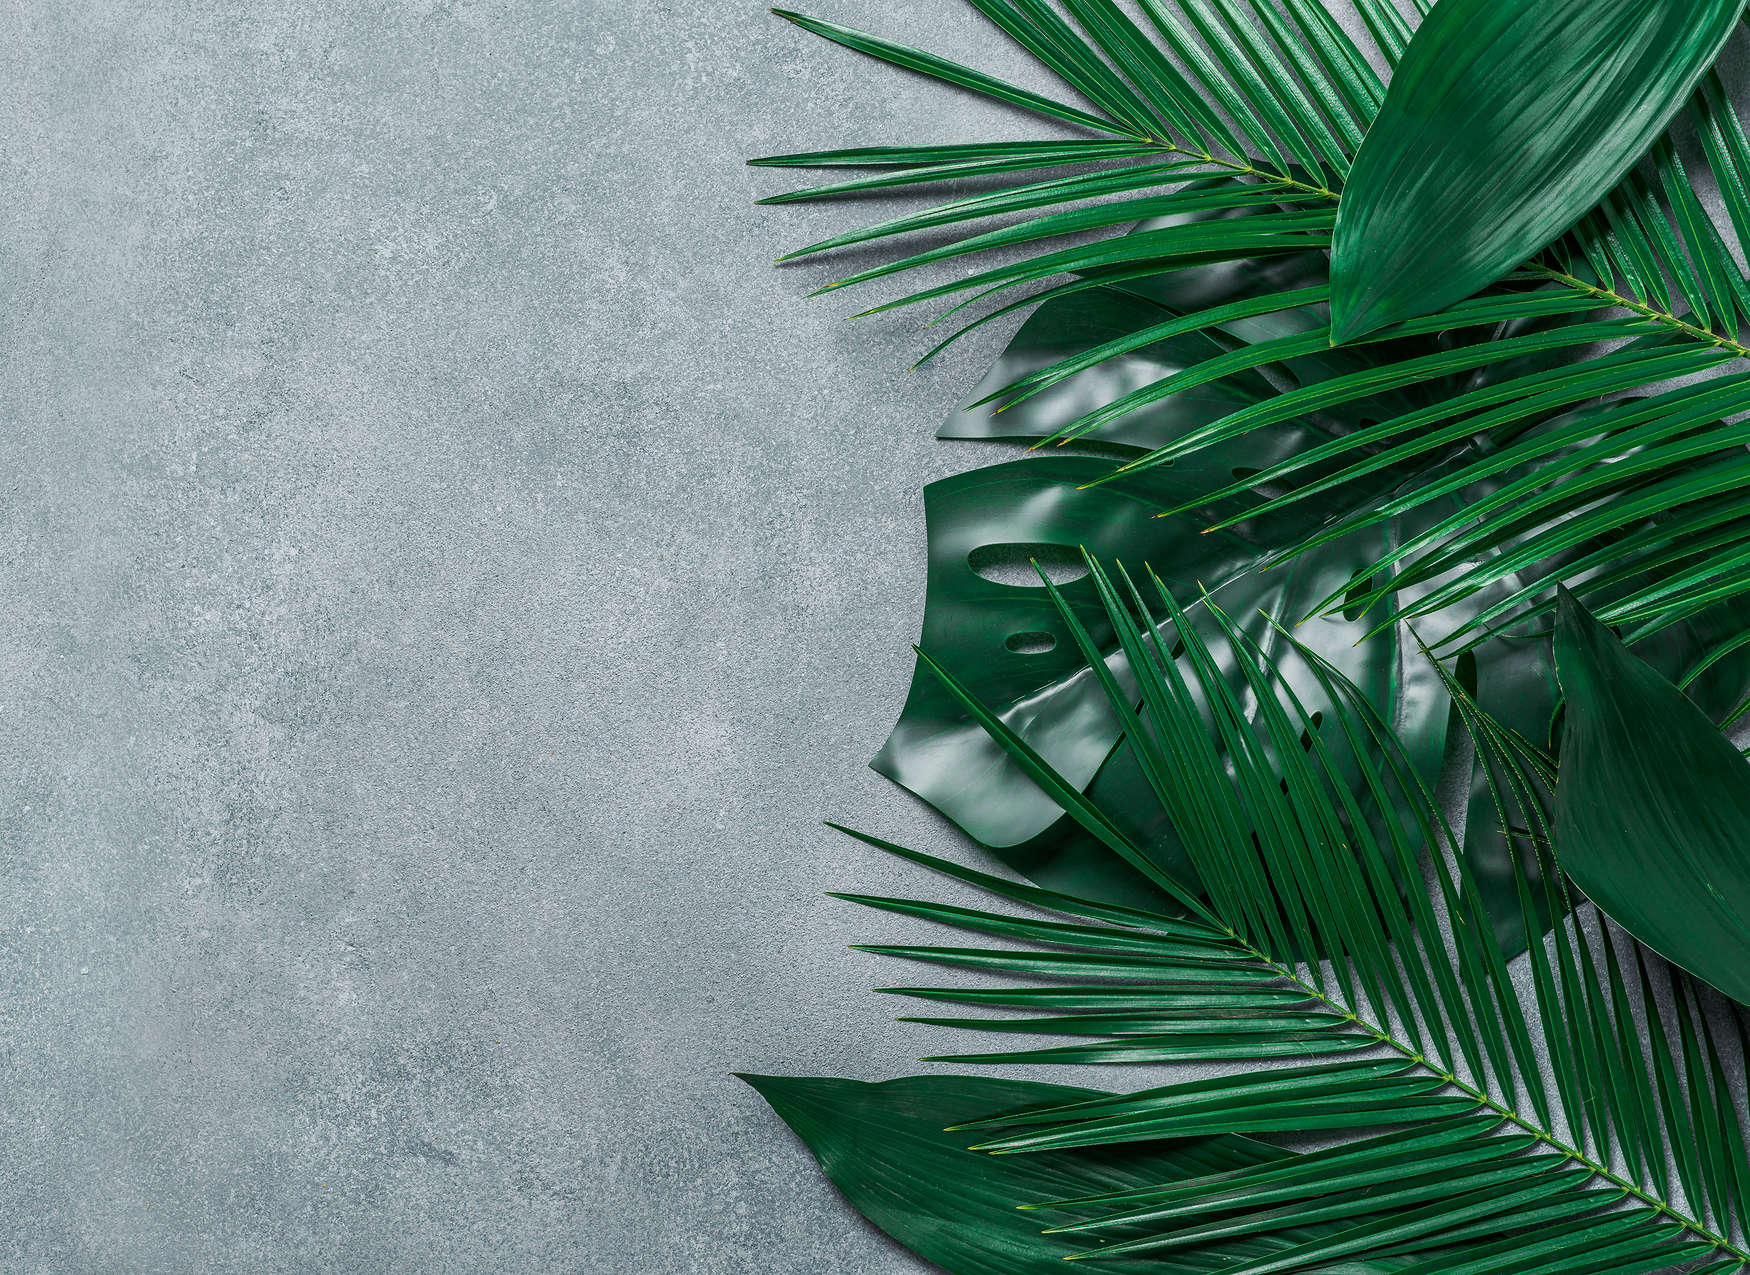             Fototapete tropische Blätter auf Betonuntergrund – Grün, Grau
        